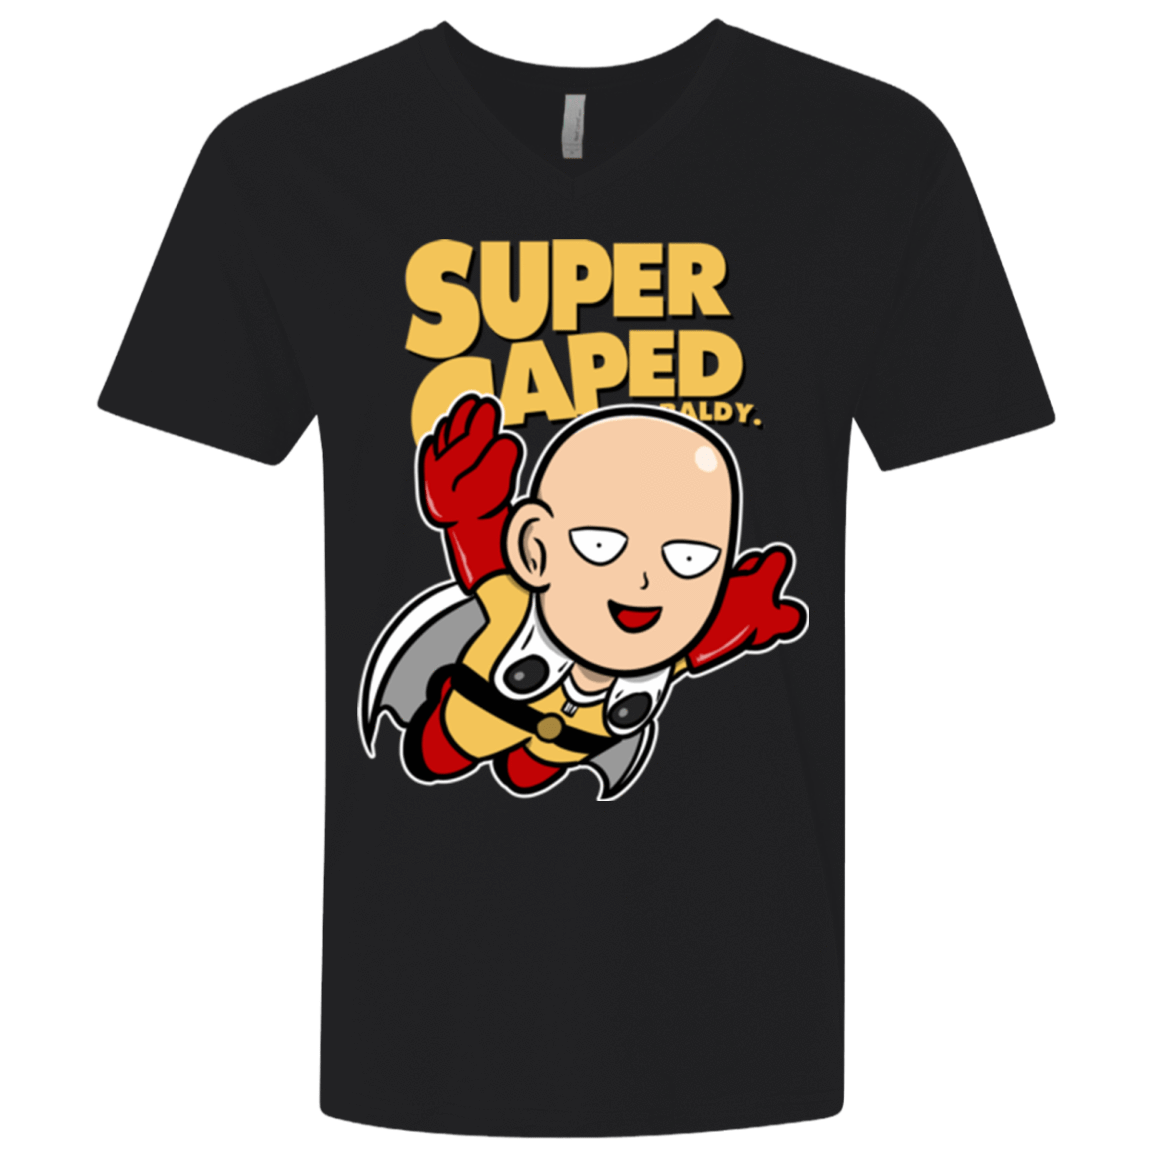 T-Shirts Black / X-Small Super Caped Baldy (1) Men's Premium V-Neck